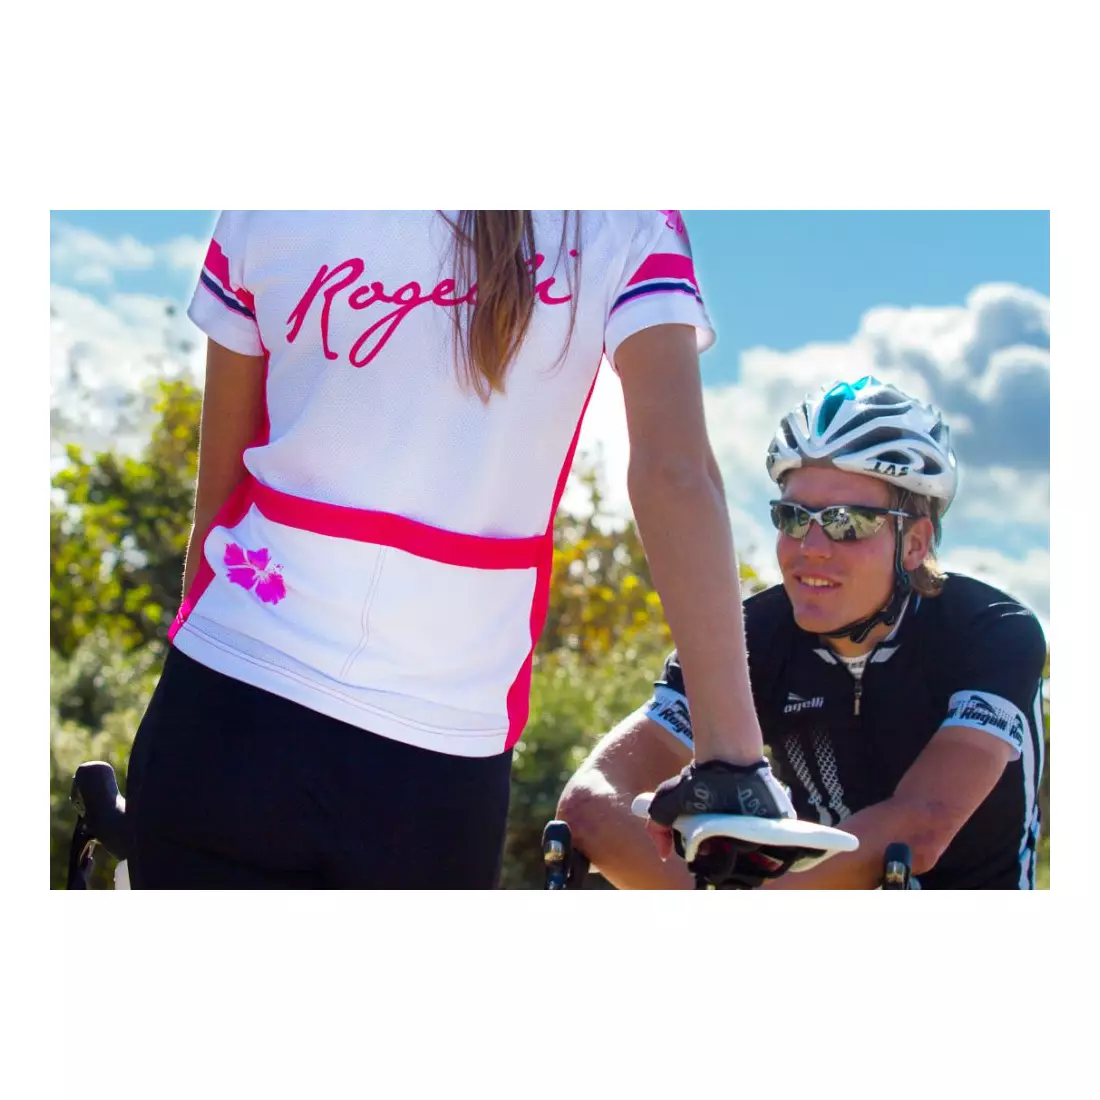 ROGELLI SABRINA - ultraľahký dámsky cyklistický dres